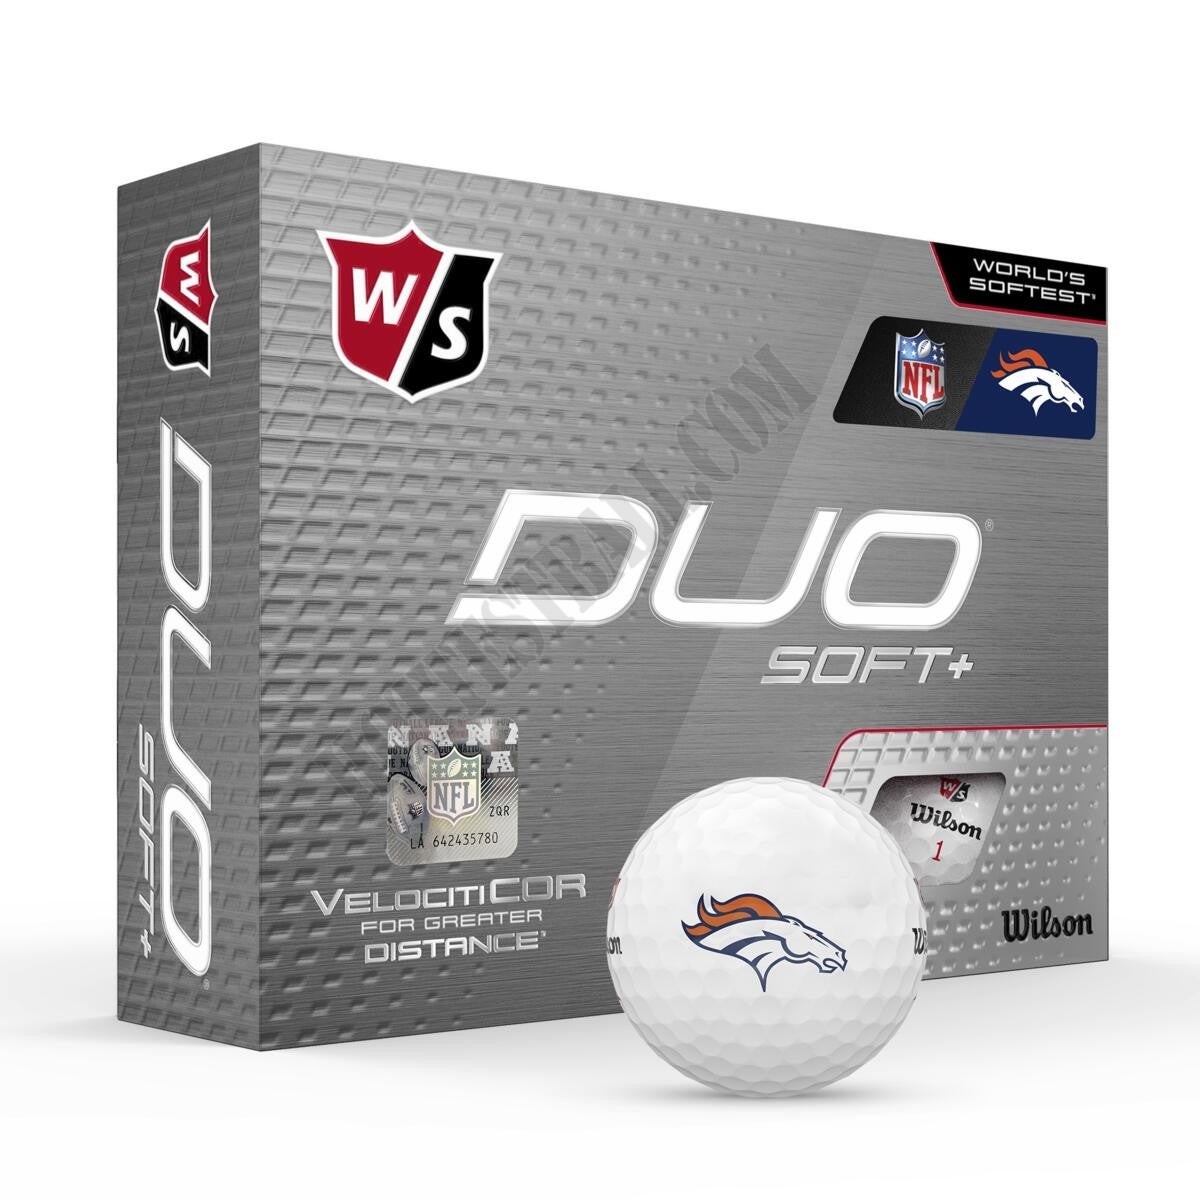 Duo Soft+ NFL Golf Balls - Denver Broncos ● Wilson Promotions - Duo Soft+ NFL Golf Balls - Denver Broncos ● Wilson Promotions